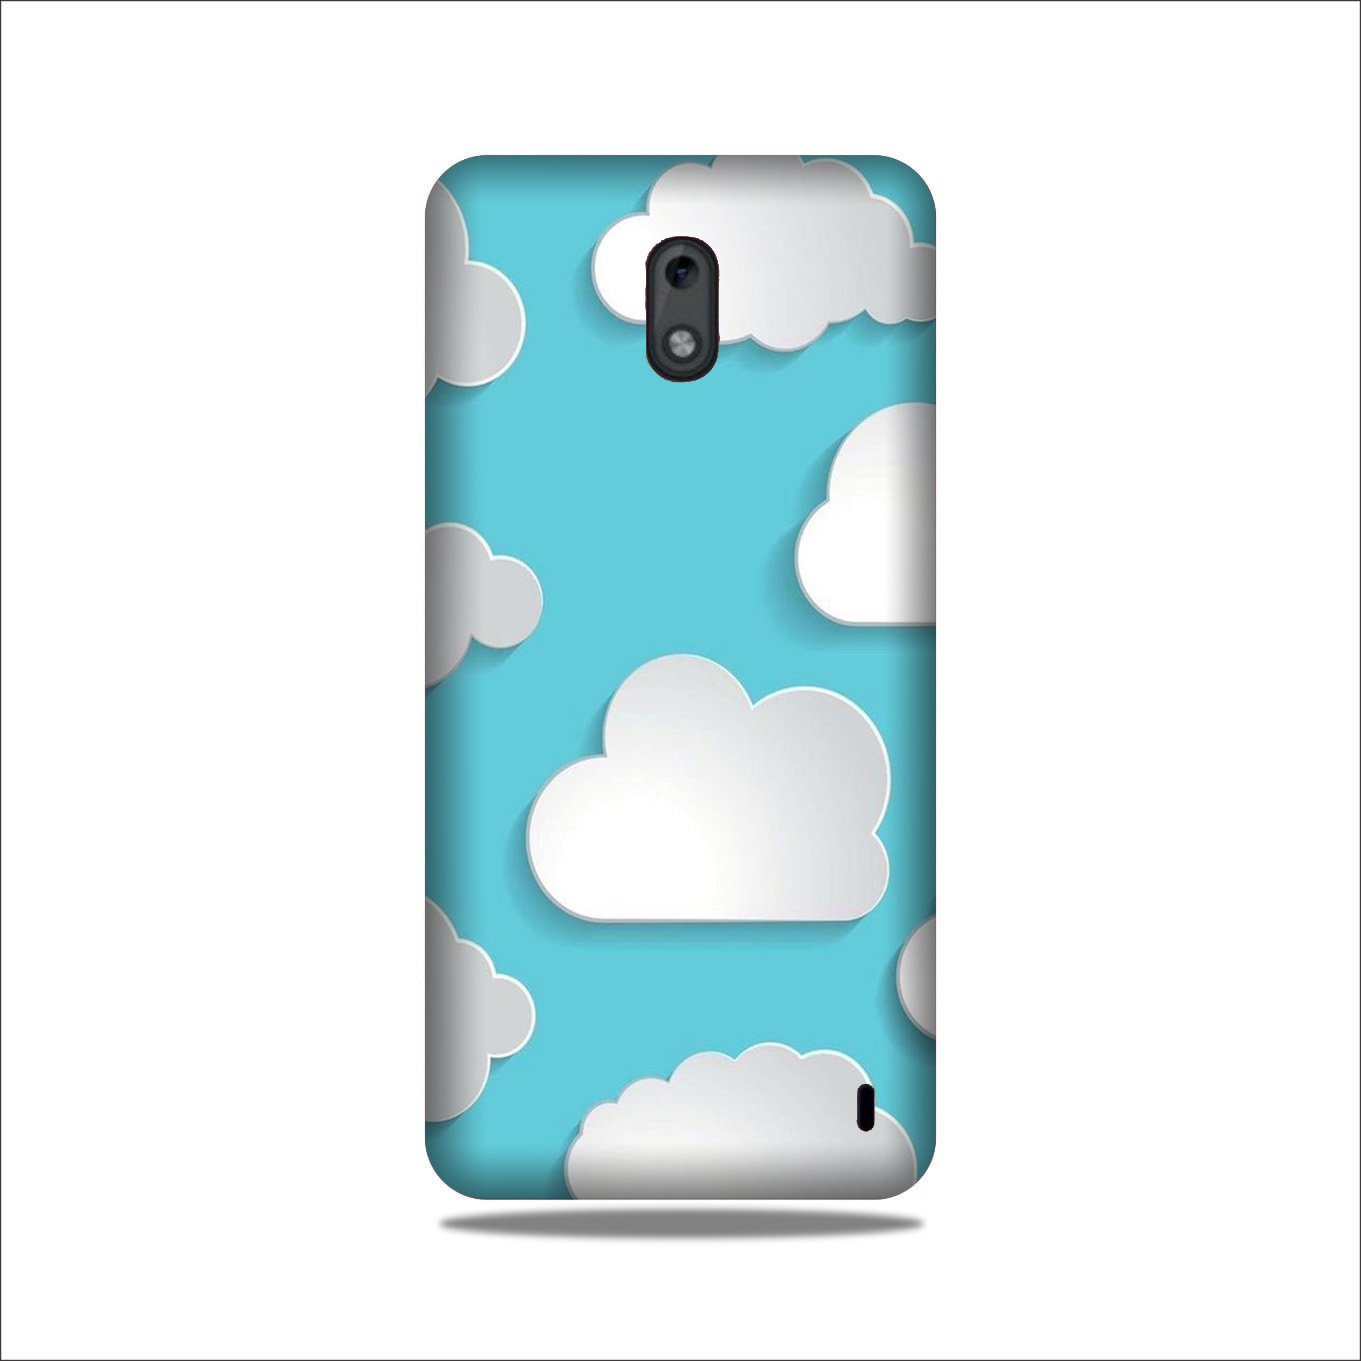 Clouds Case for Nokia 2.2 (Design No. 210)